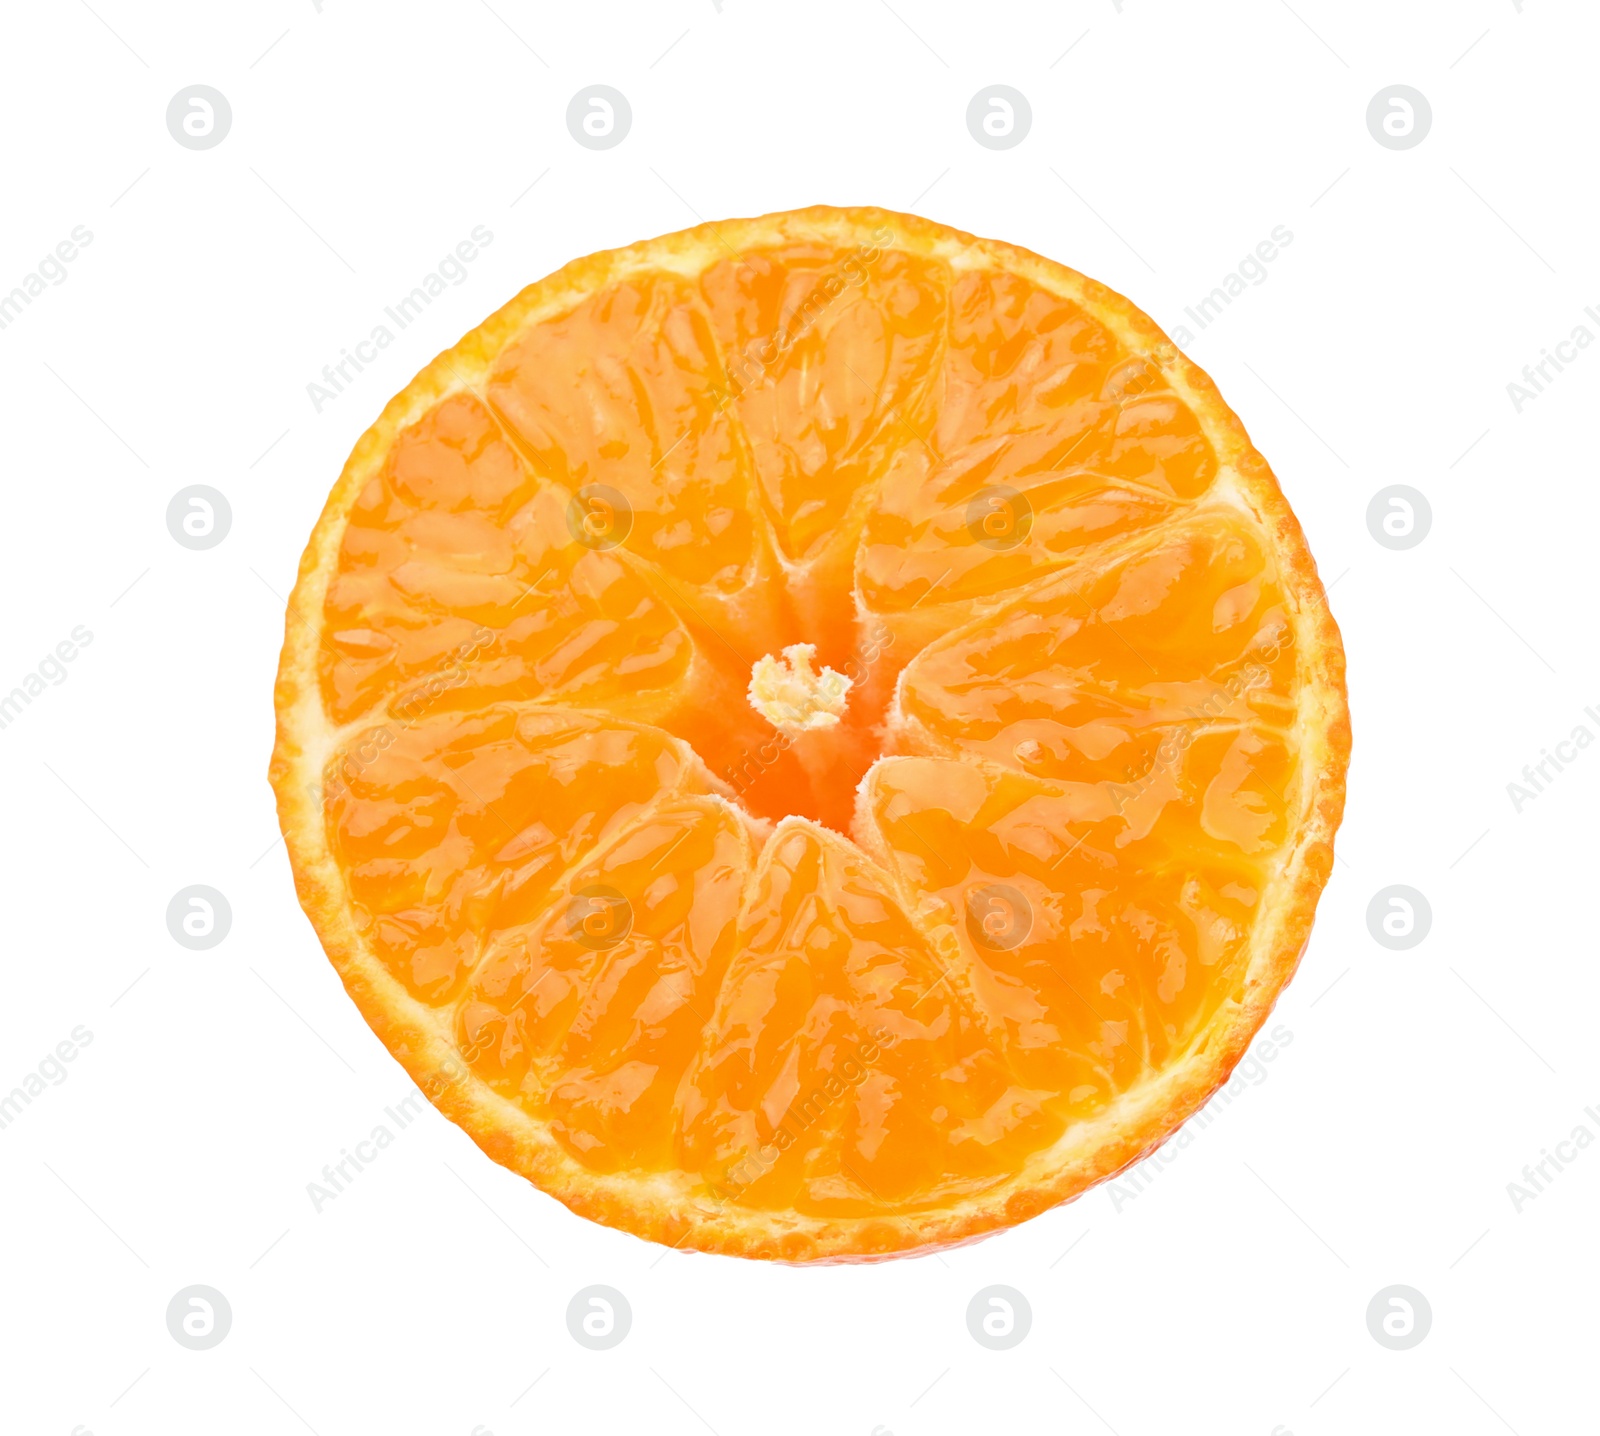 Photo of One fresh juicy tangerine slice on white background